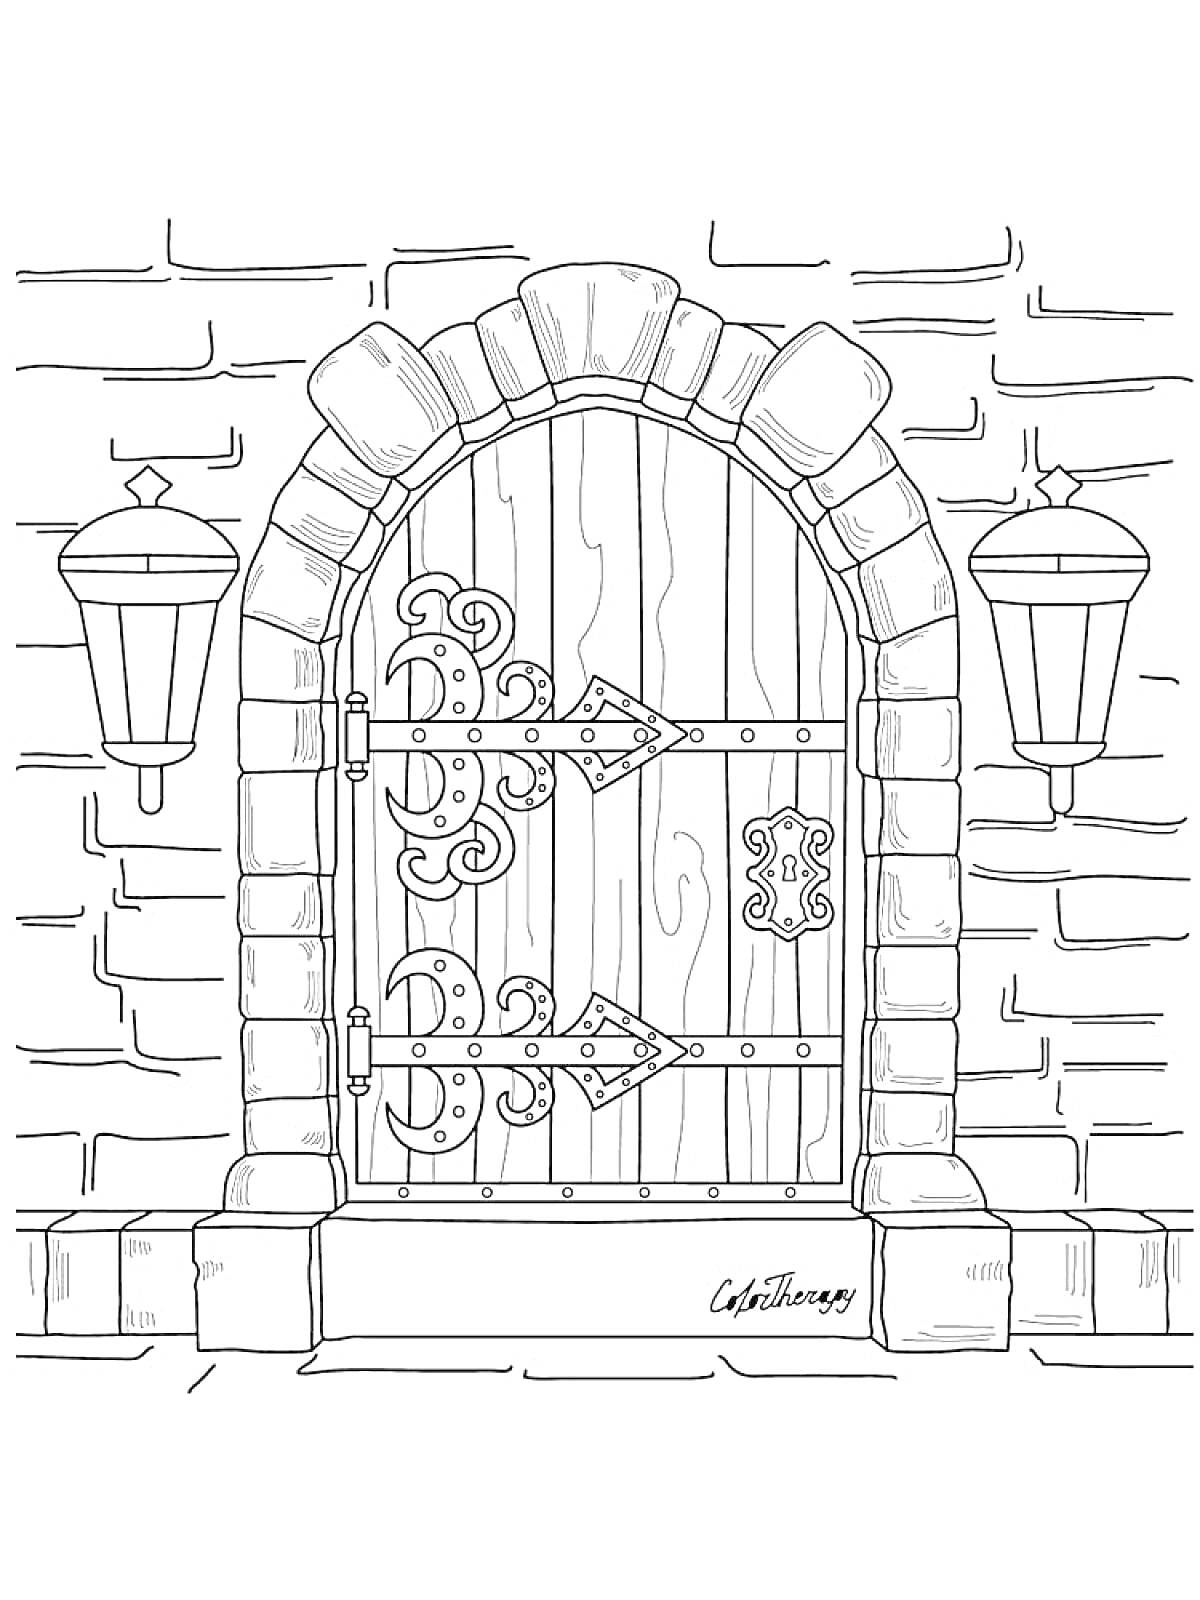 Раскраска Деревянная арочная дверь с металлическими декоративными петлями, фонарями и кирпичной кладкой